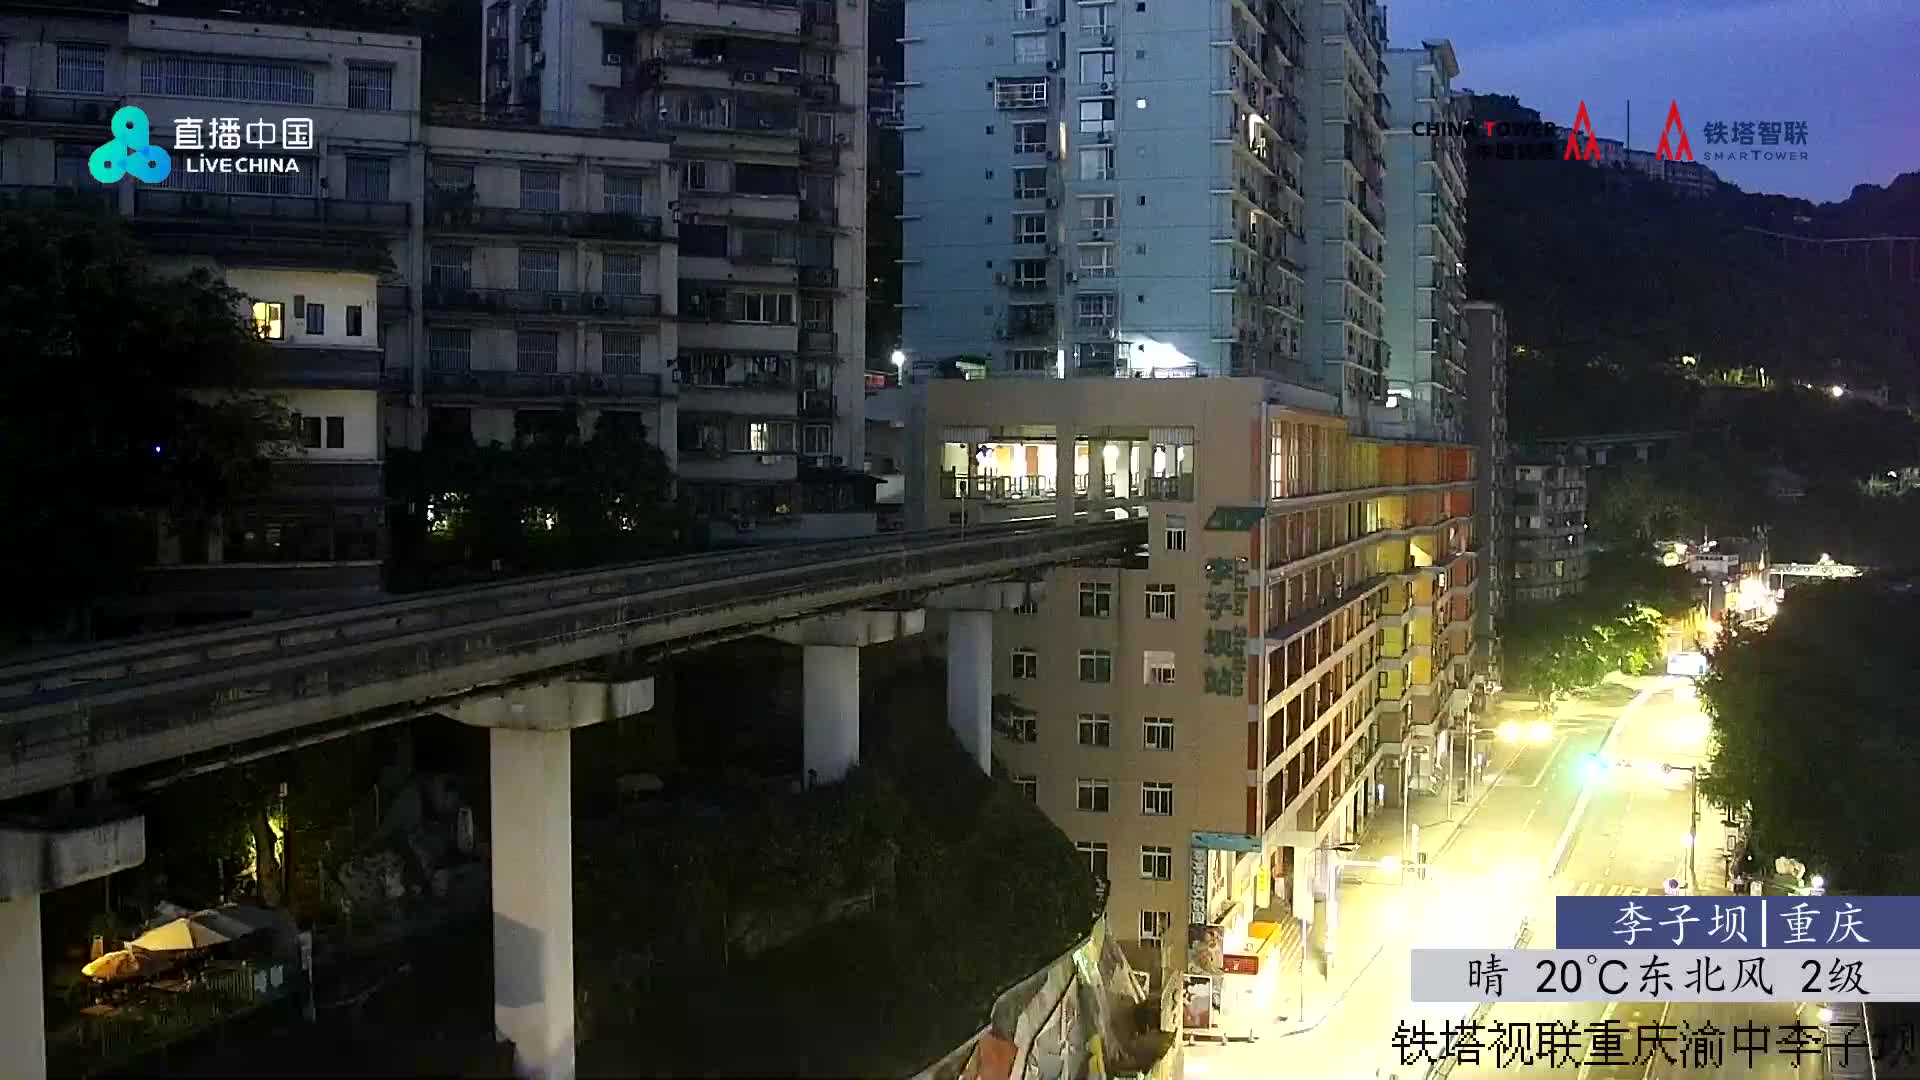 Chongqing Lu. 05:32